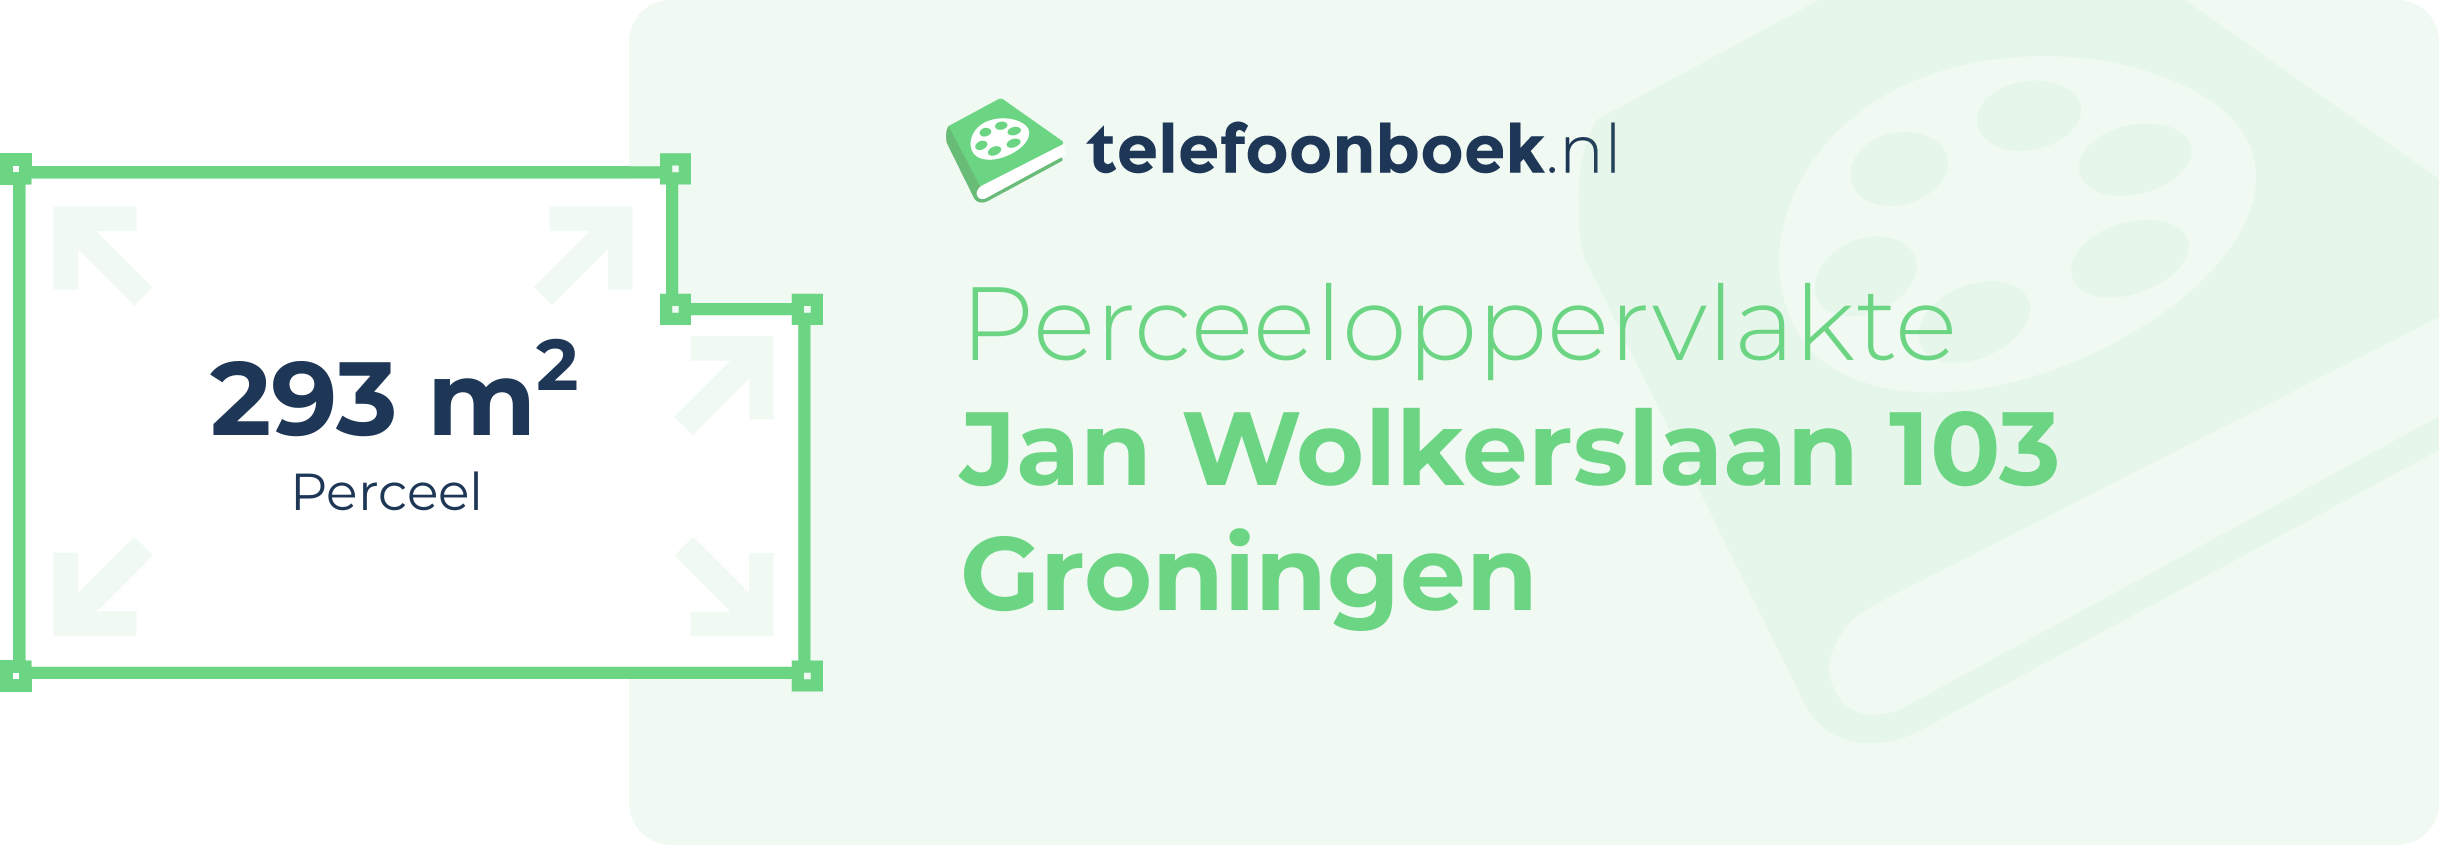 Perceeloppervlakte Jan Wolkerslaan 103 Groningen